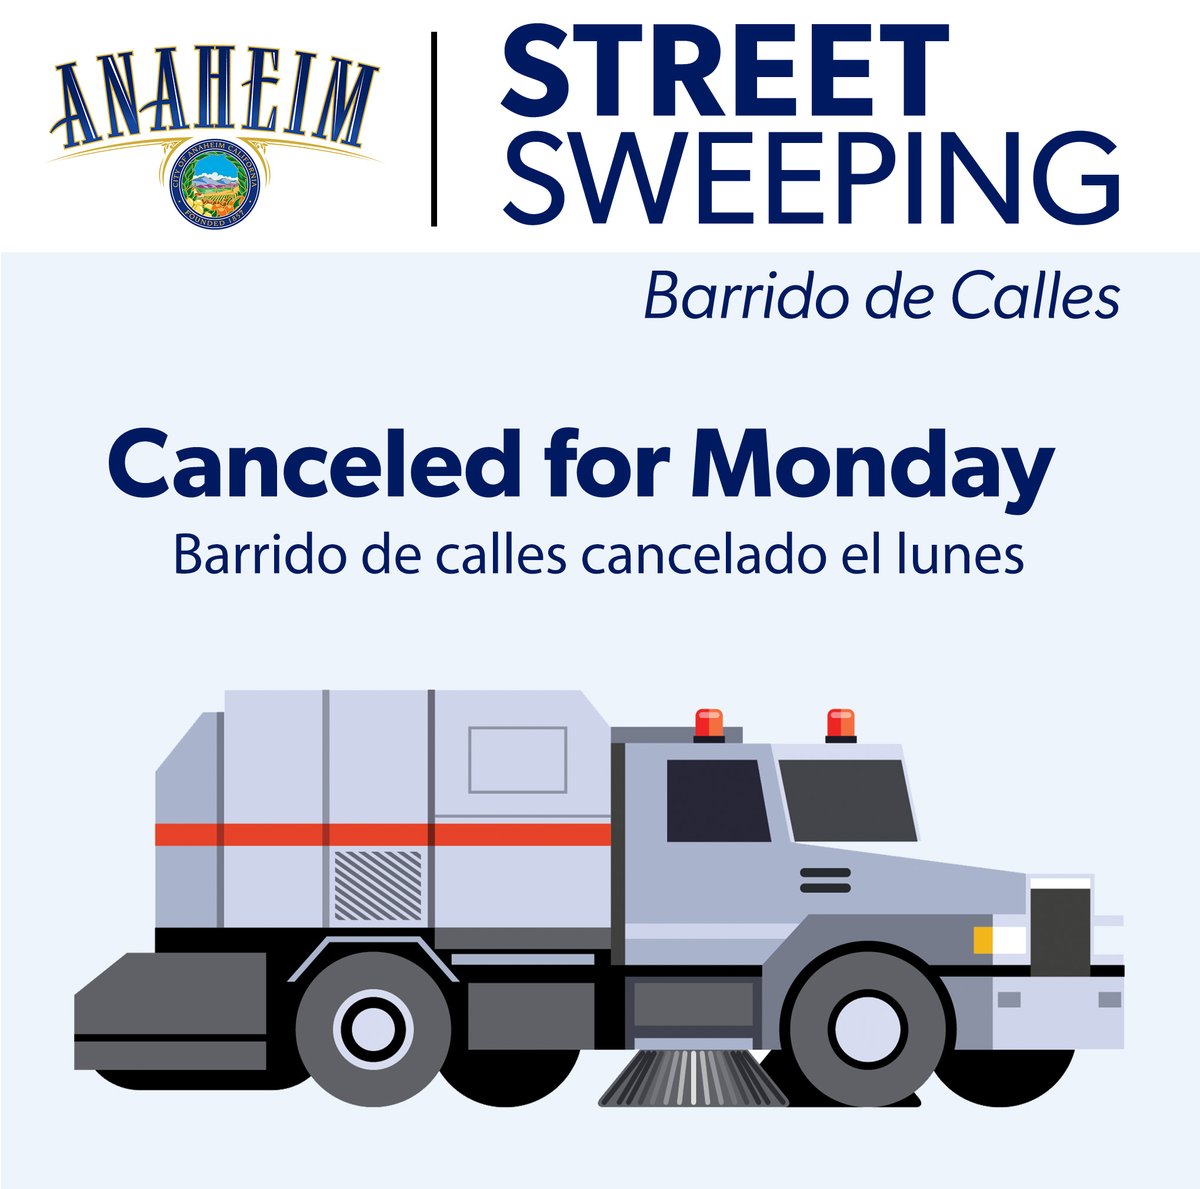 Monday street sweeping is canceled with heavy rain forecast. El barrido de calles del lunes se cancela y se esperan fuertes lluvias.